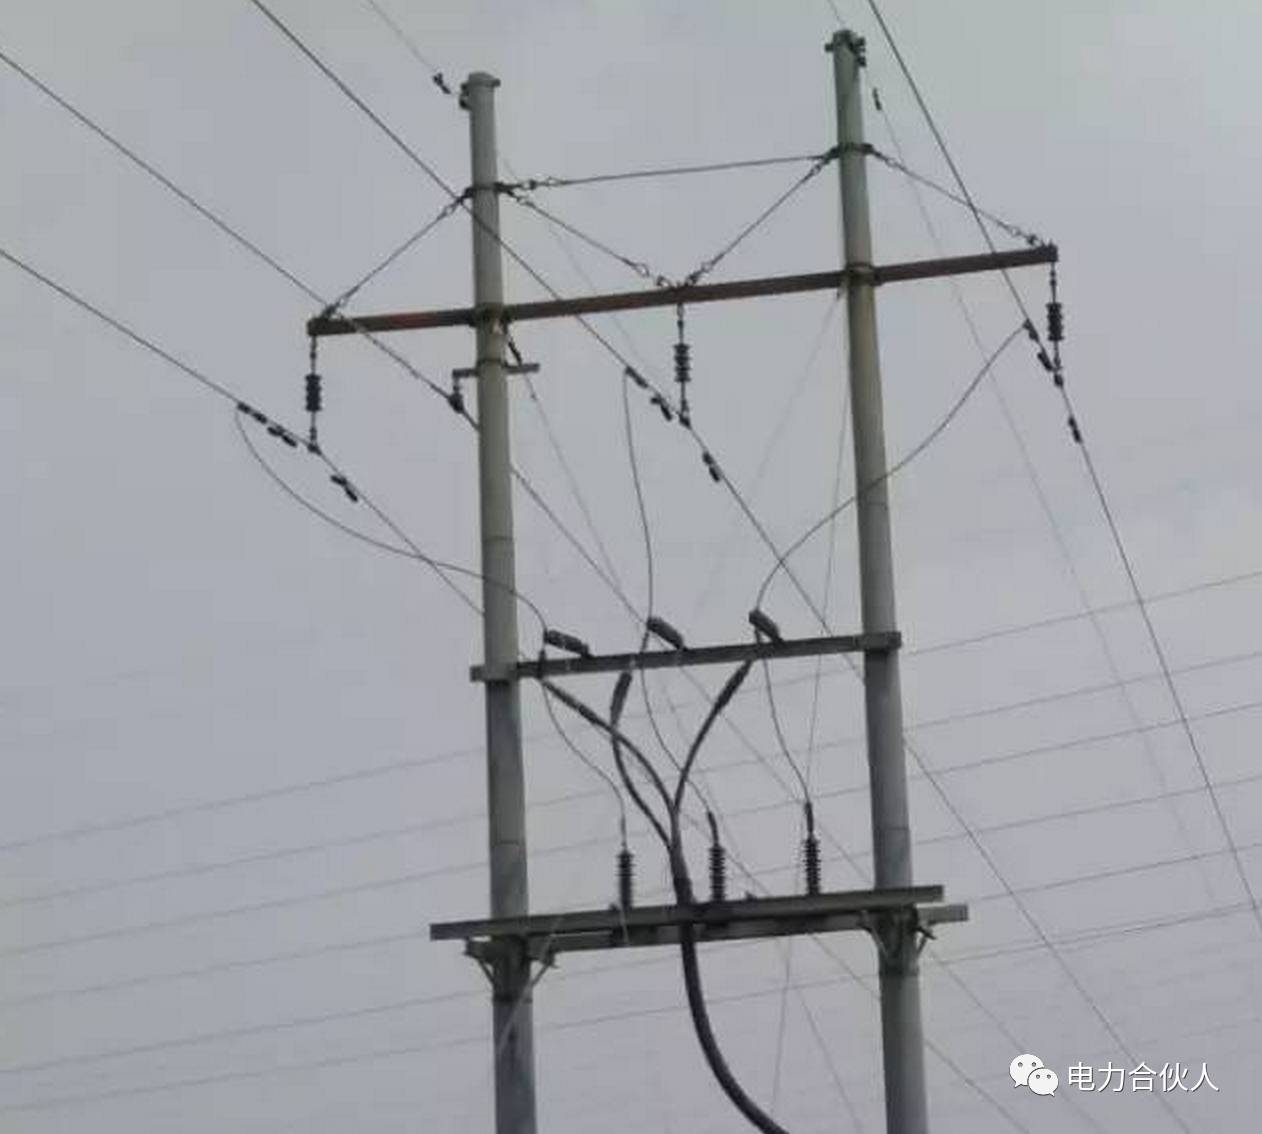 【涨知识 】输电线路各种电缆终端杆塔 ,你能分清楚吗?